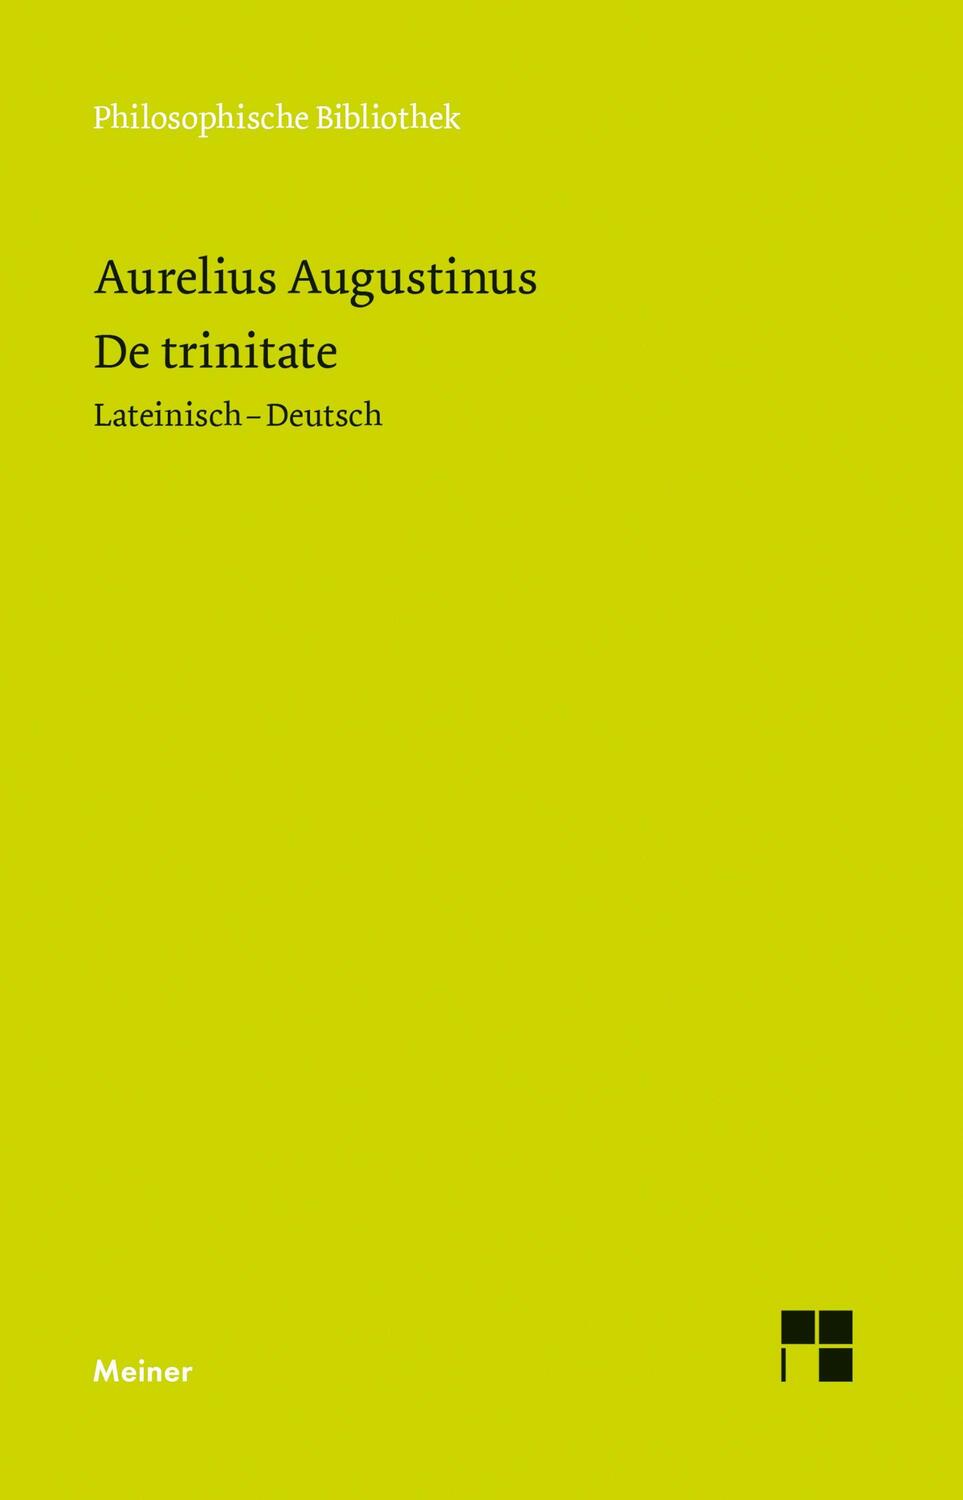 De trinitate - Augustinus, Aurelius